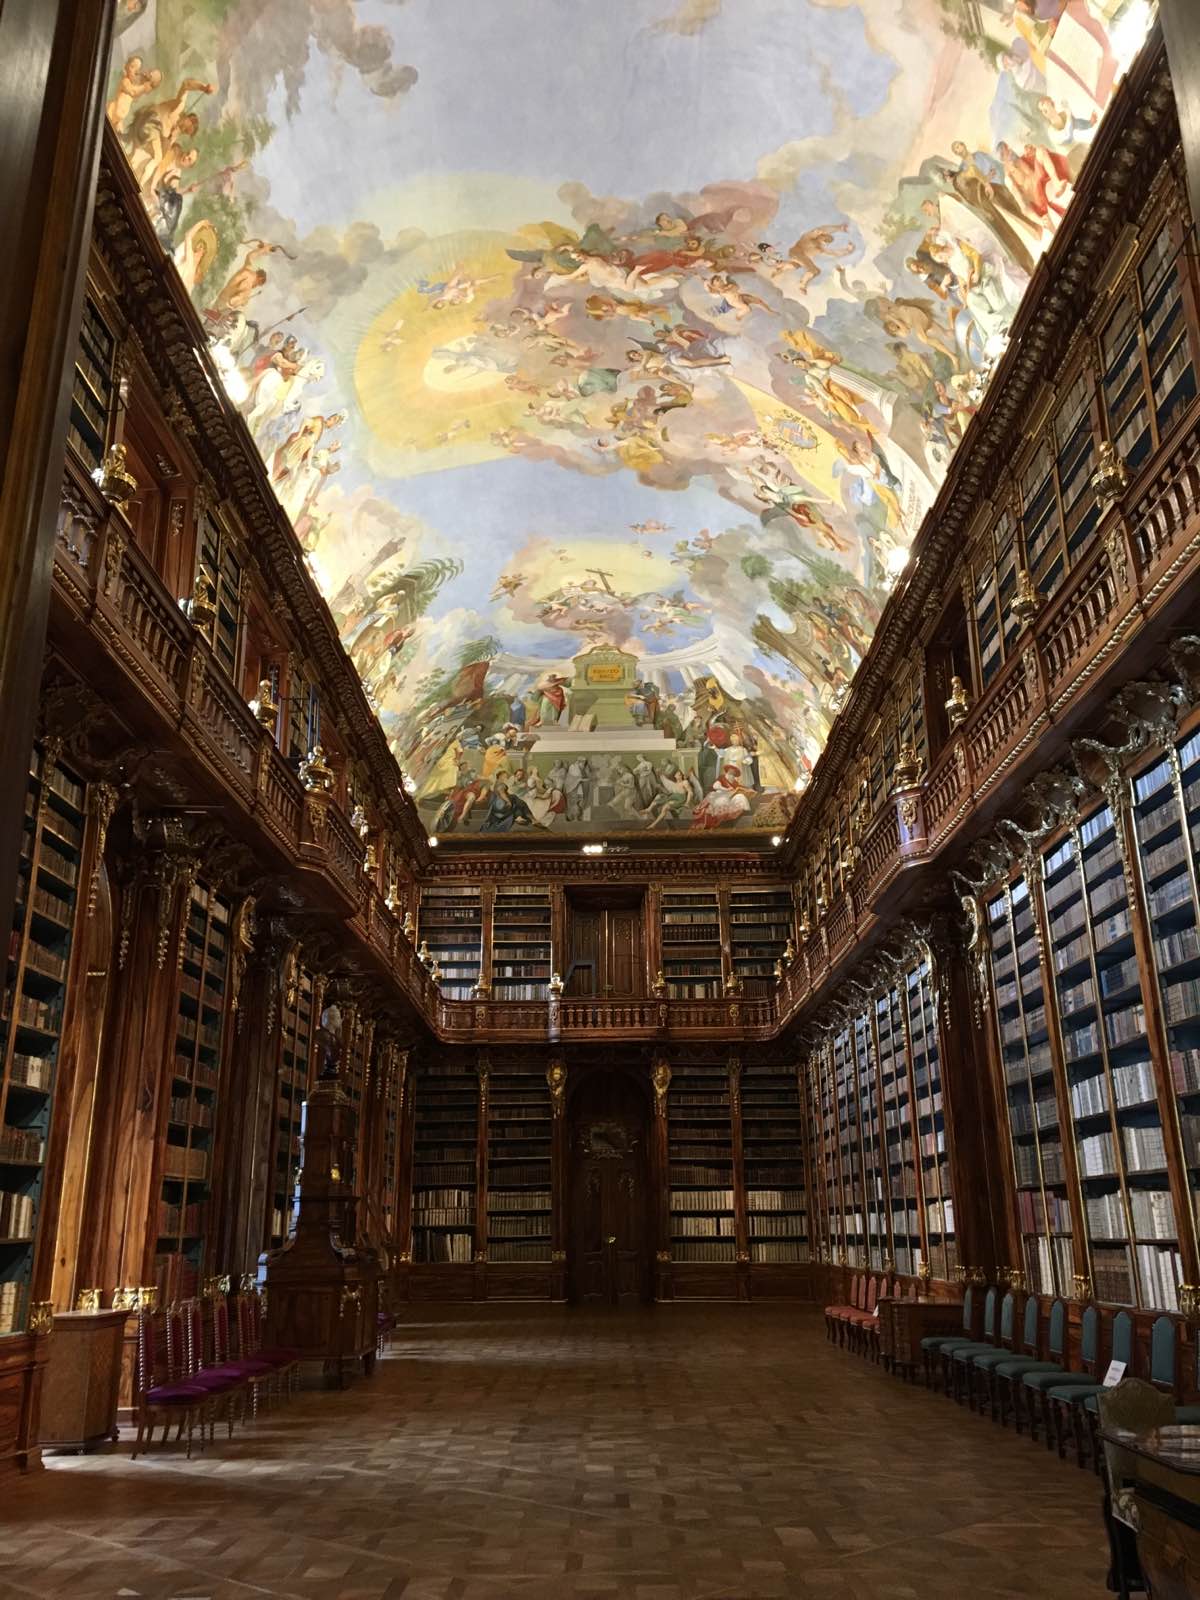 从布拉格城堡步行过去，这个号称世界最美的图书馆确实让人赞叹。参观需要门